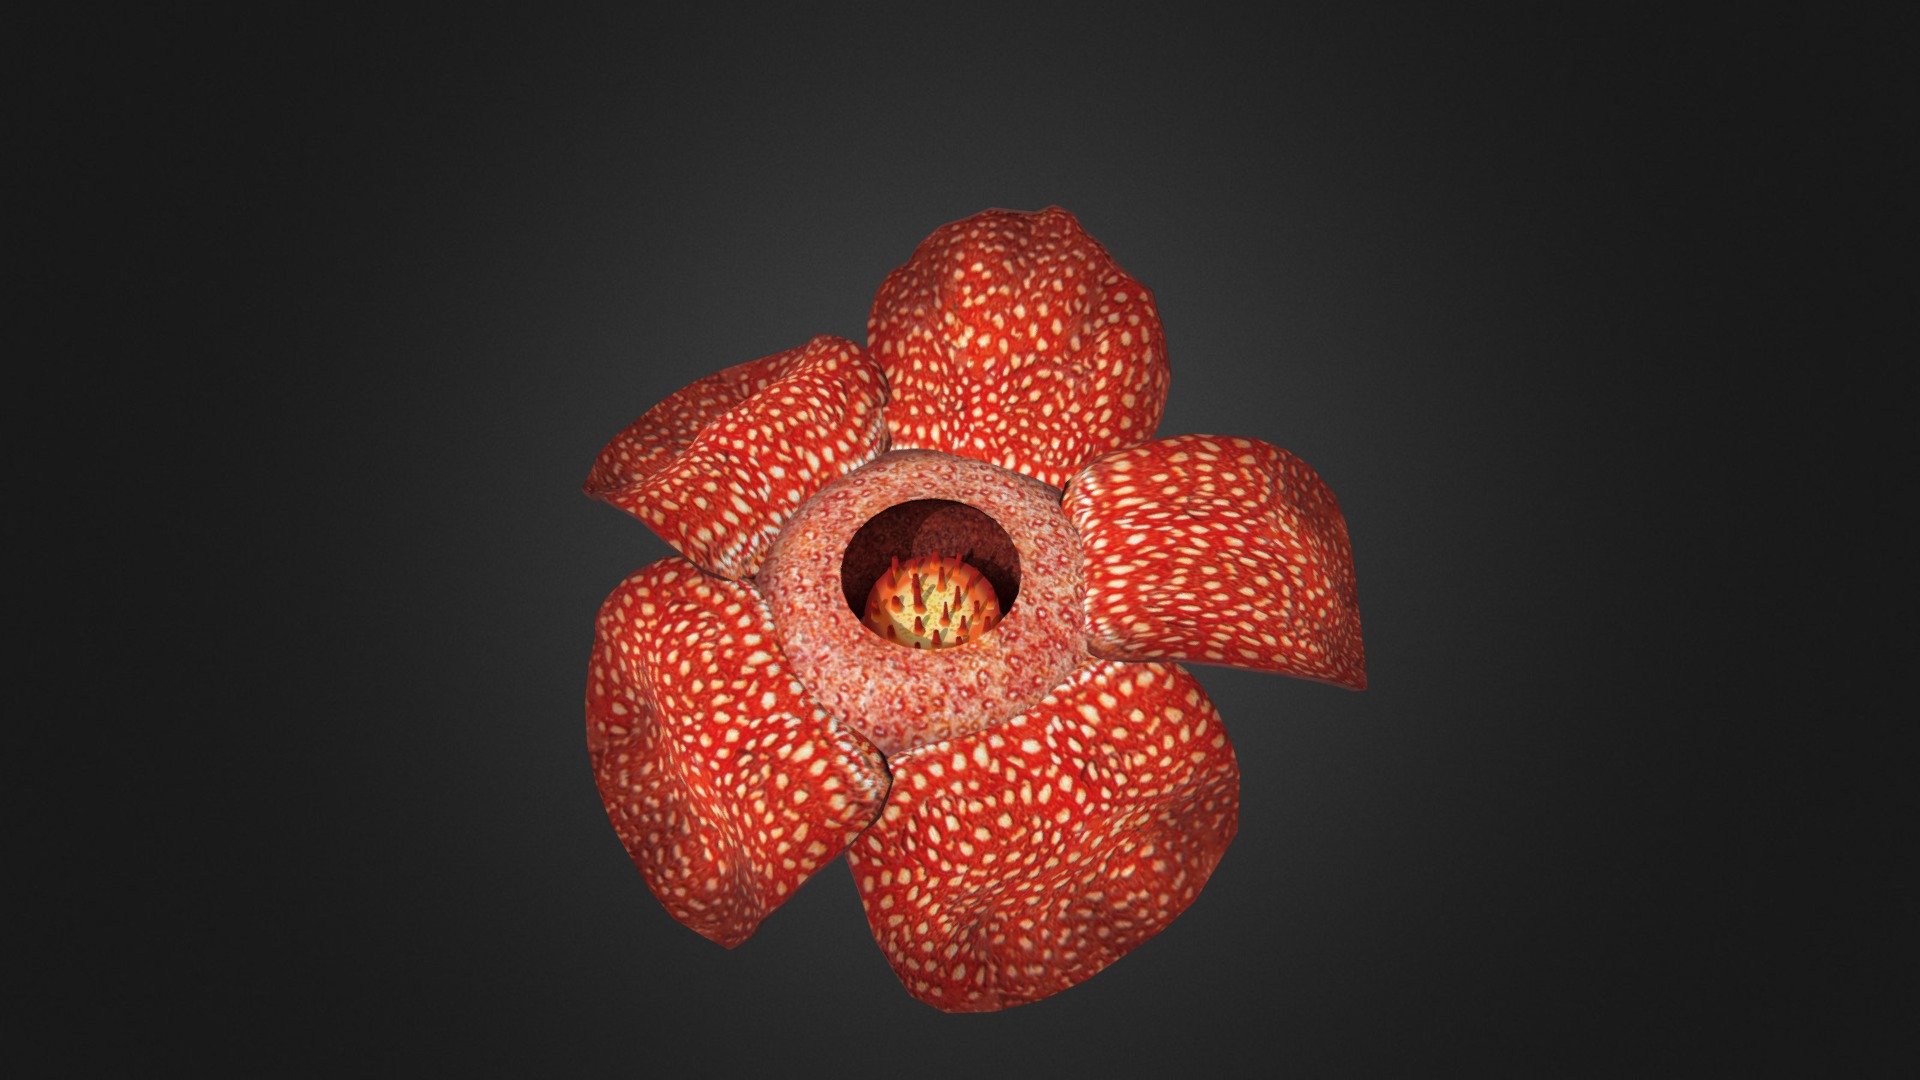 Rafflesia on a rotten log4 - 3D model by mbagidea 3d model